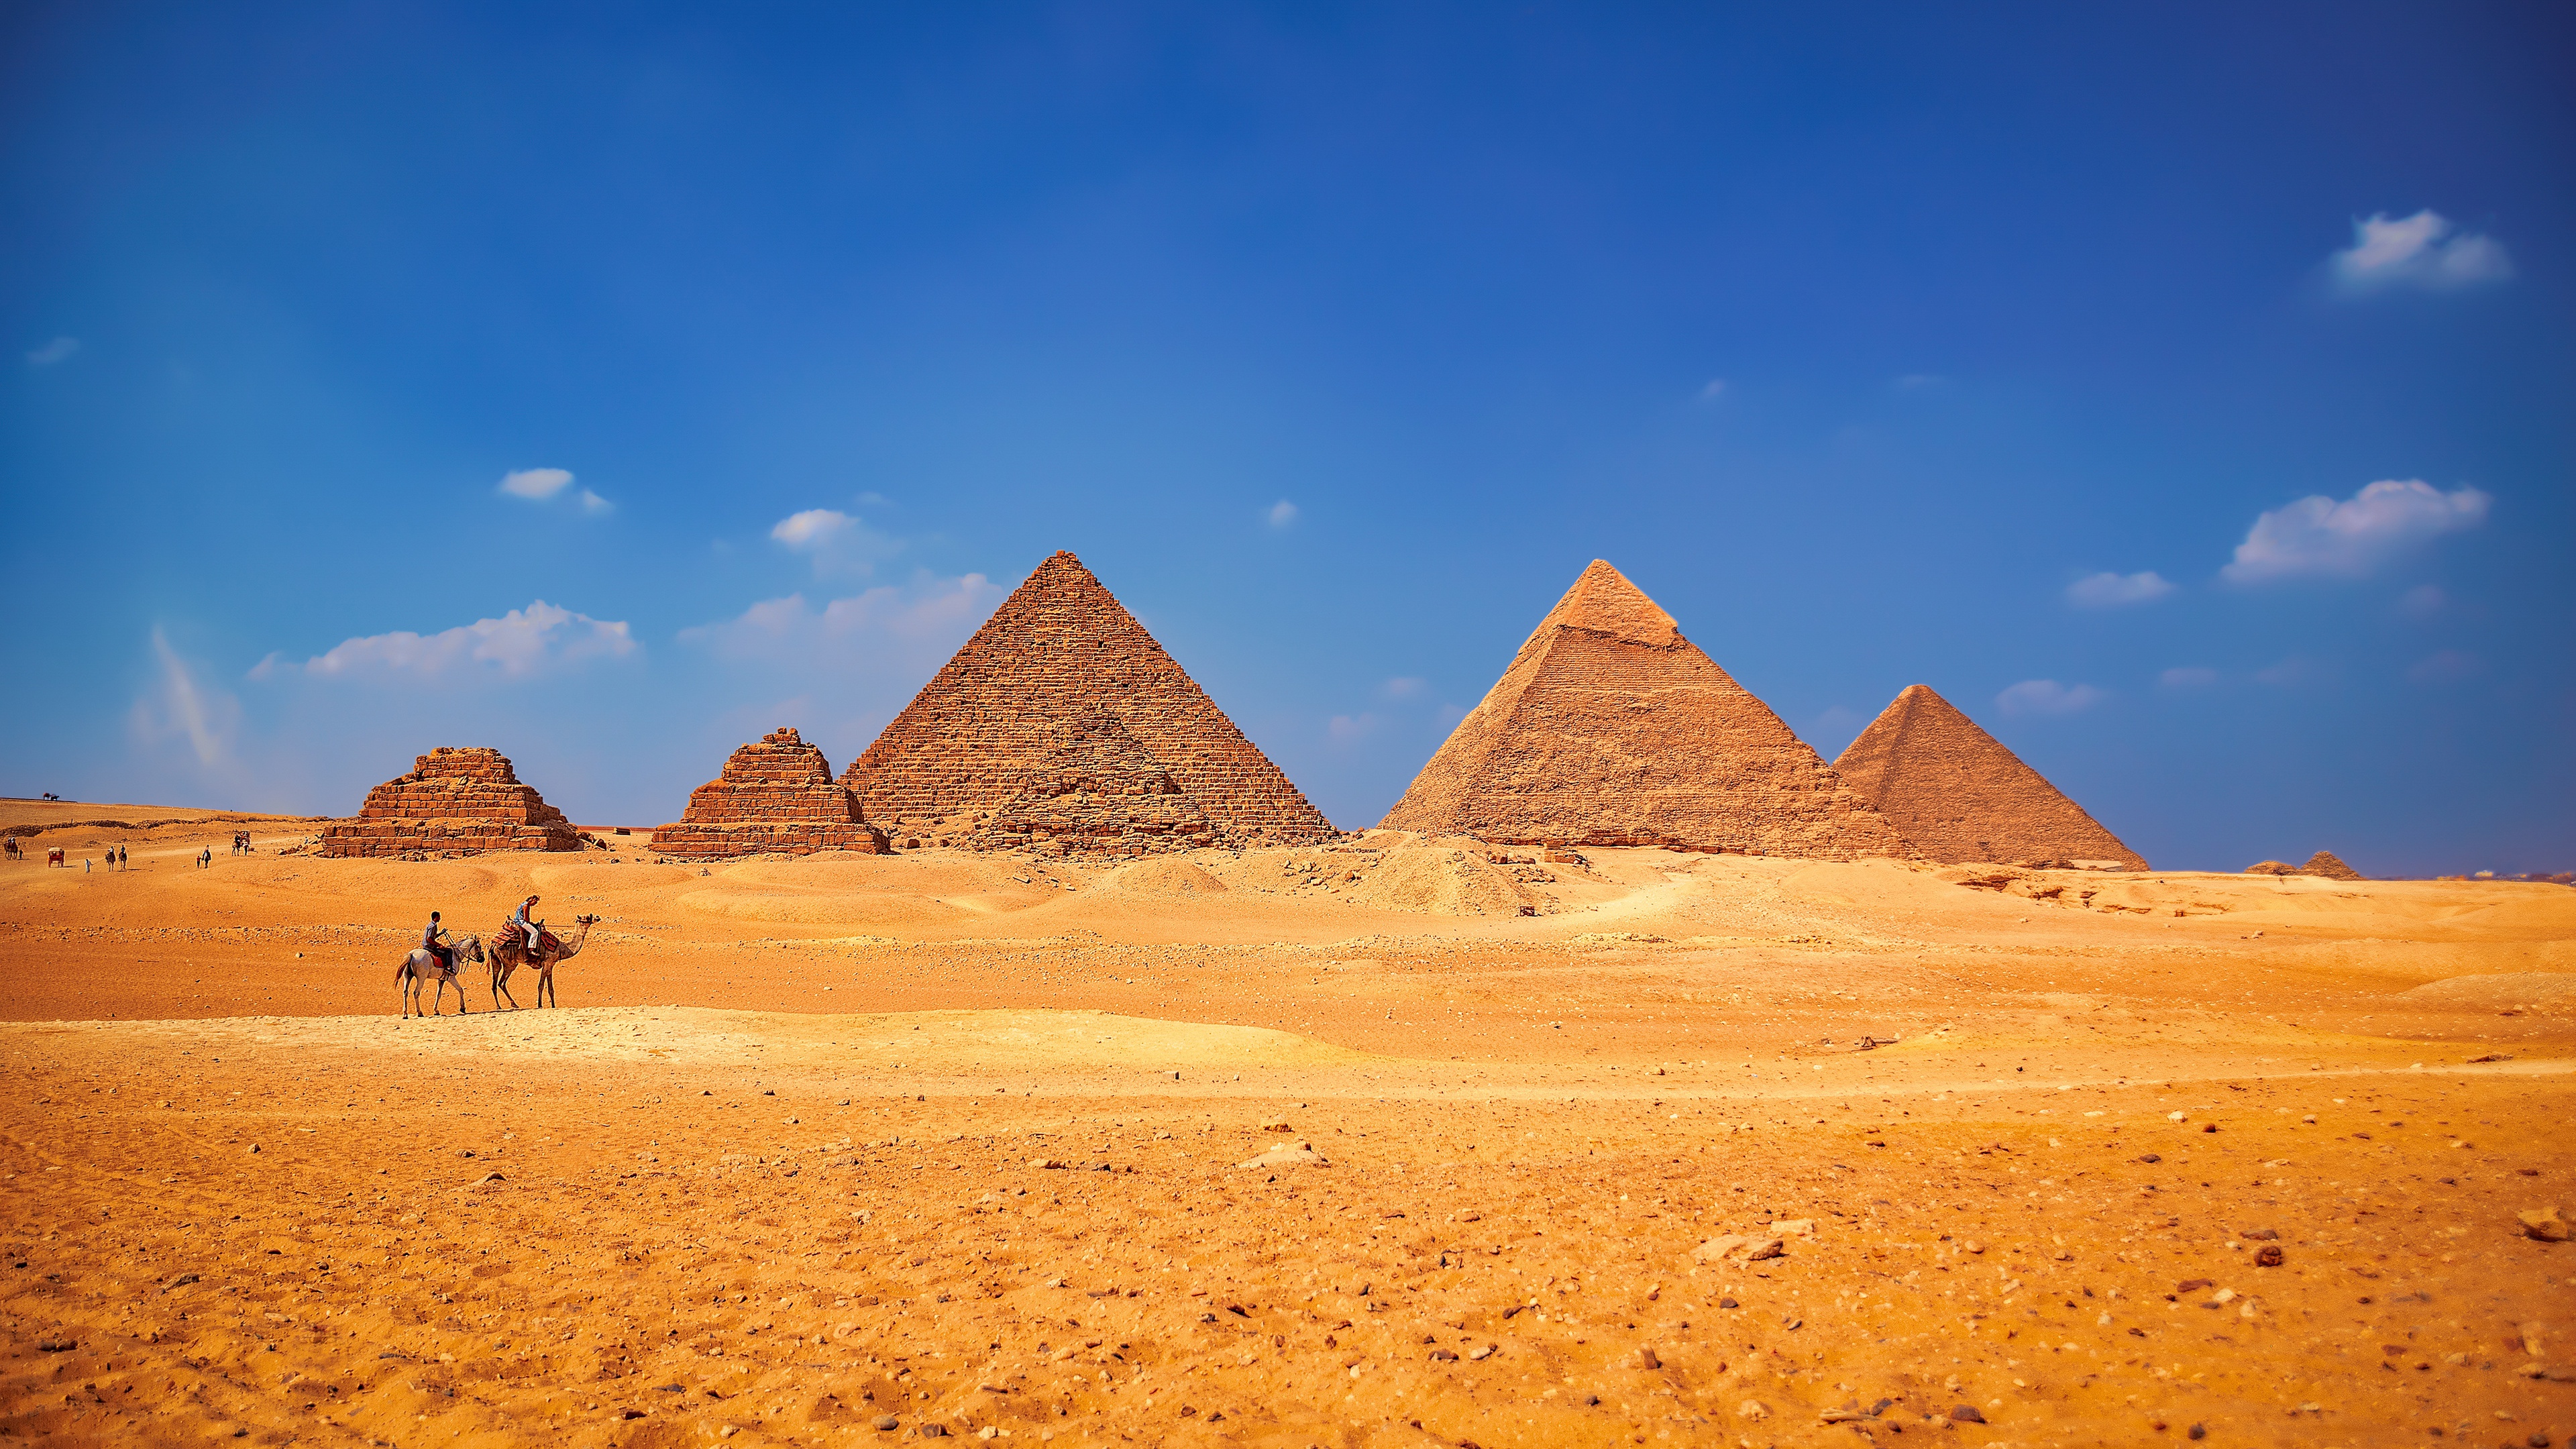 Скачать обои бесплатно Песок, Пустыня, Египет, Пирамида, Сделано Человеком картинка на рабочий стол ПК